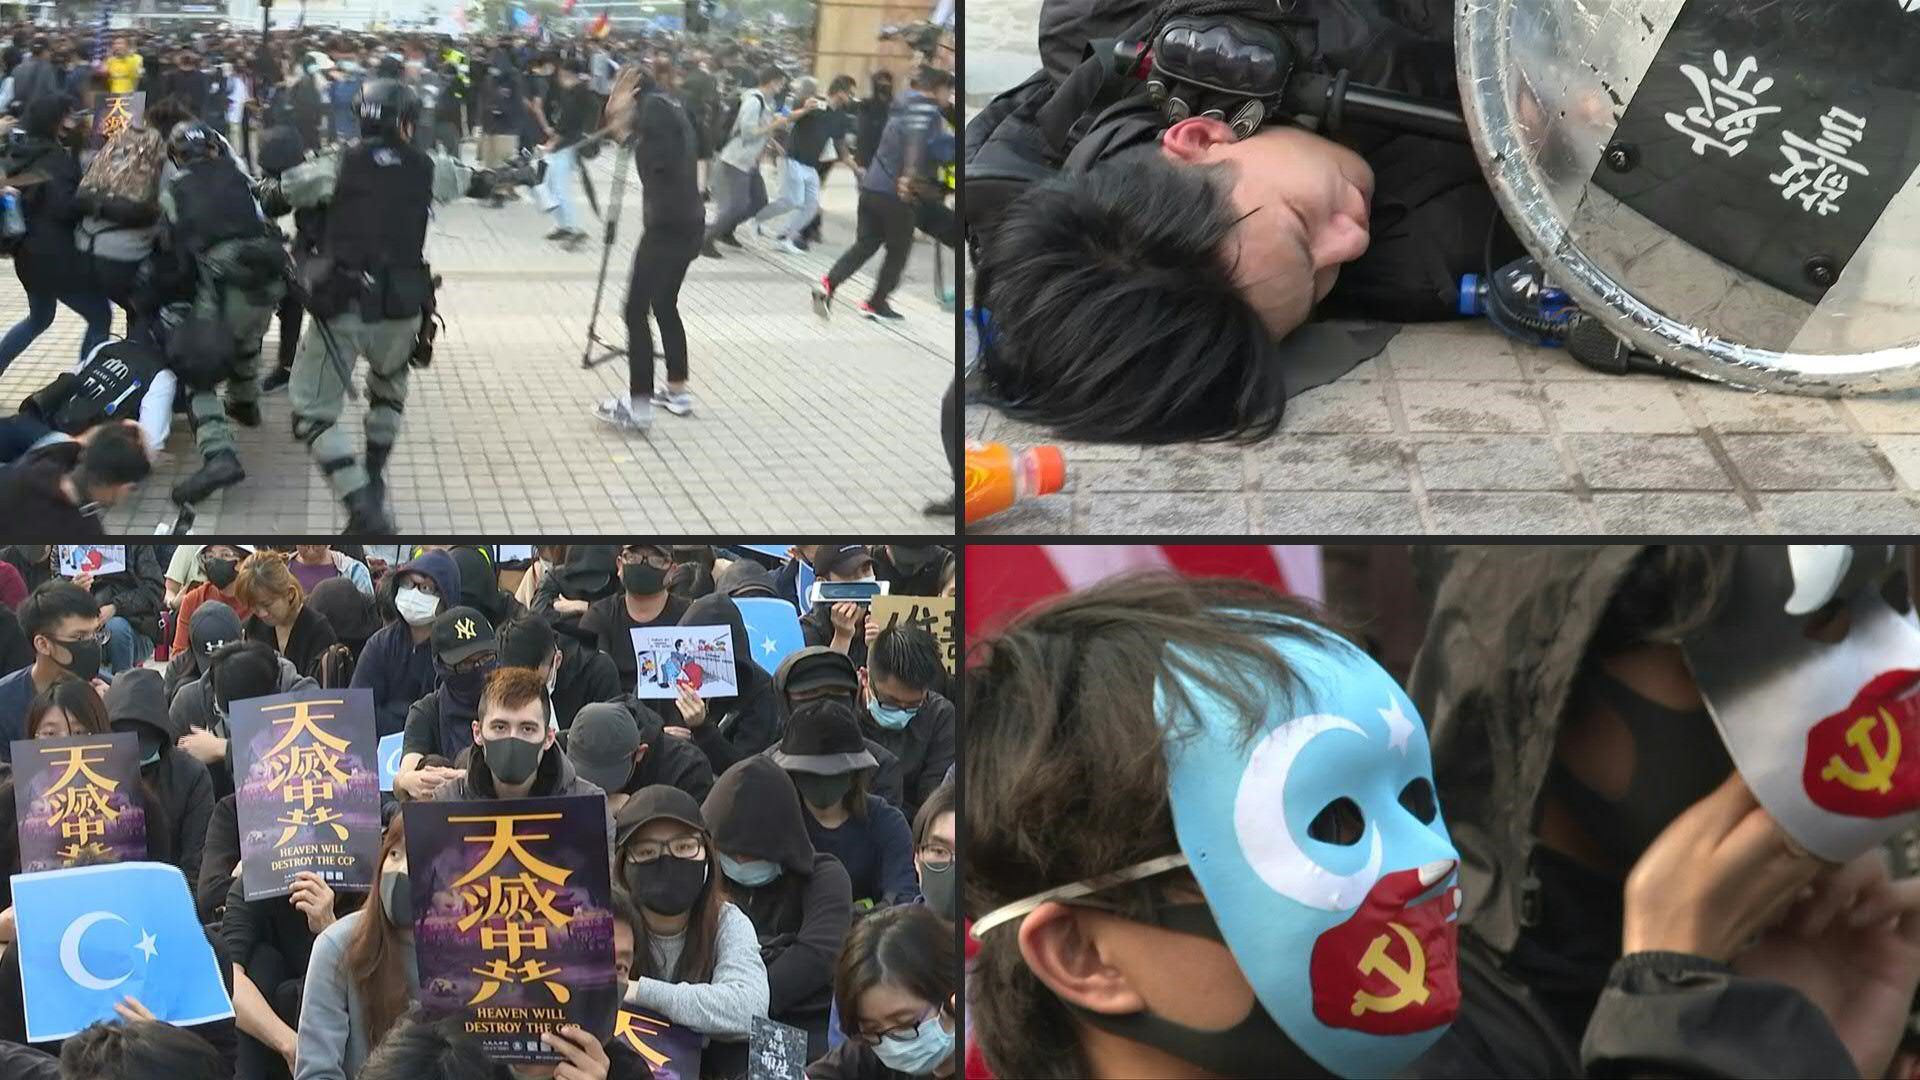 La policía antidisturbios de Hong Kong interrumpió una protesta en solidaridad con los uigures el domingo, con un agente bladiendo una pistola, en una acción susceptible de causar malestar en China, acusada de oprimir a esa comunidad musulmana.